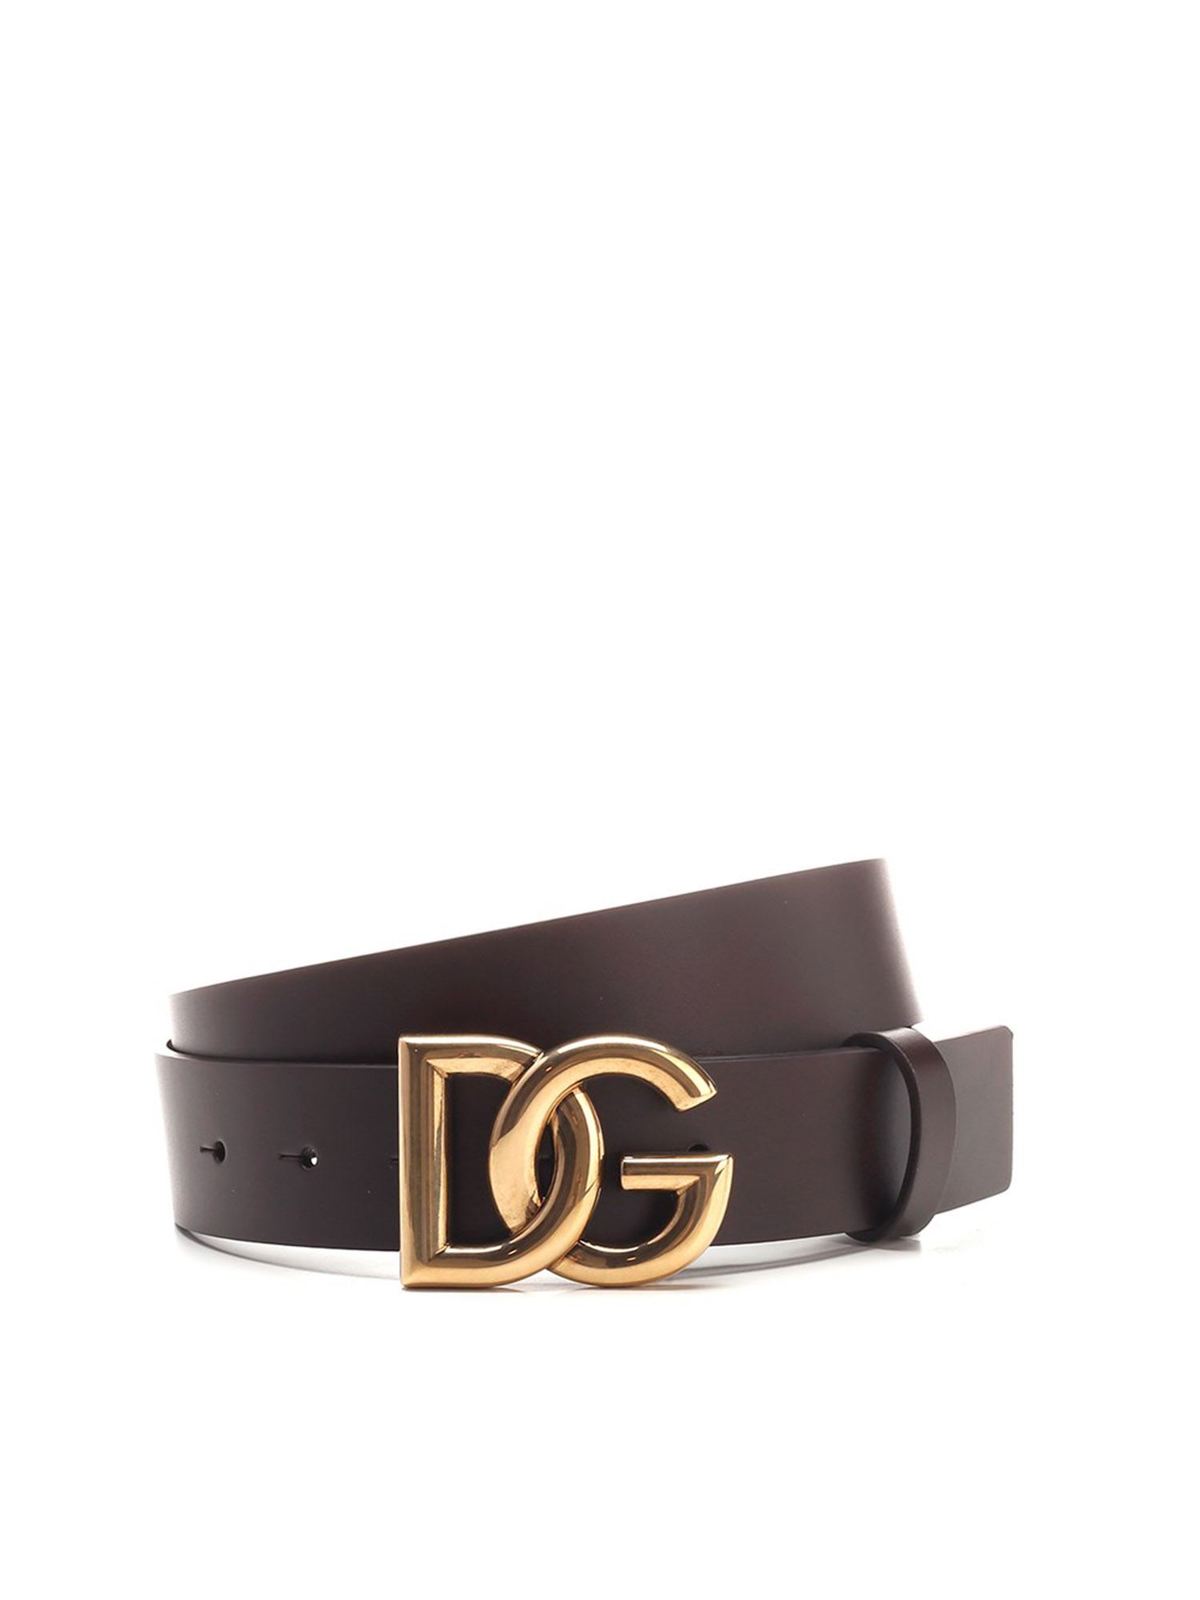 Dolce & Gabbana Dg Belt In Brown